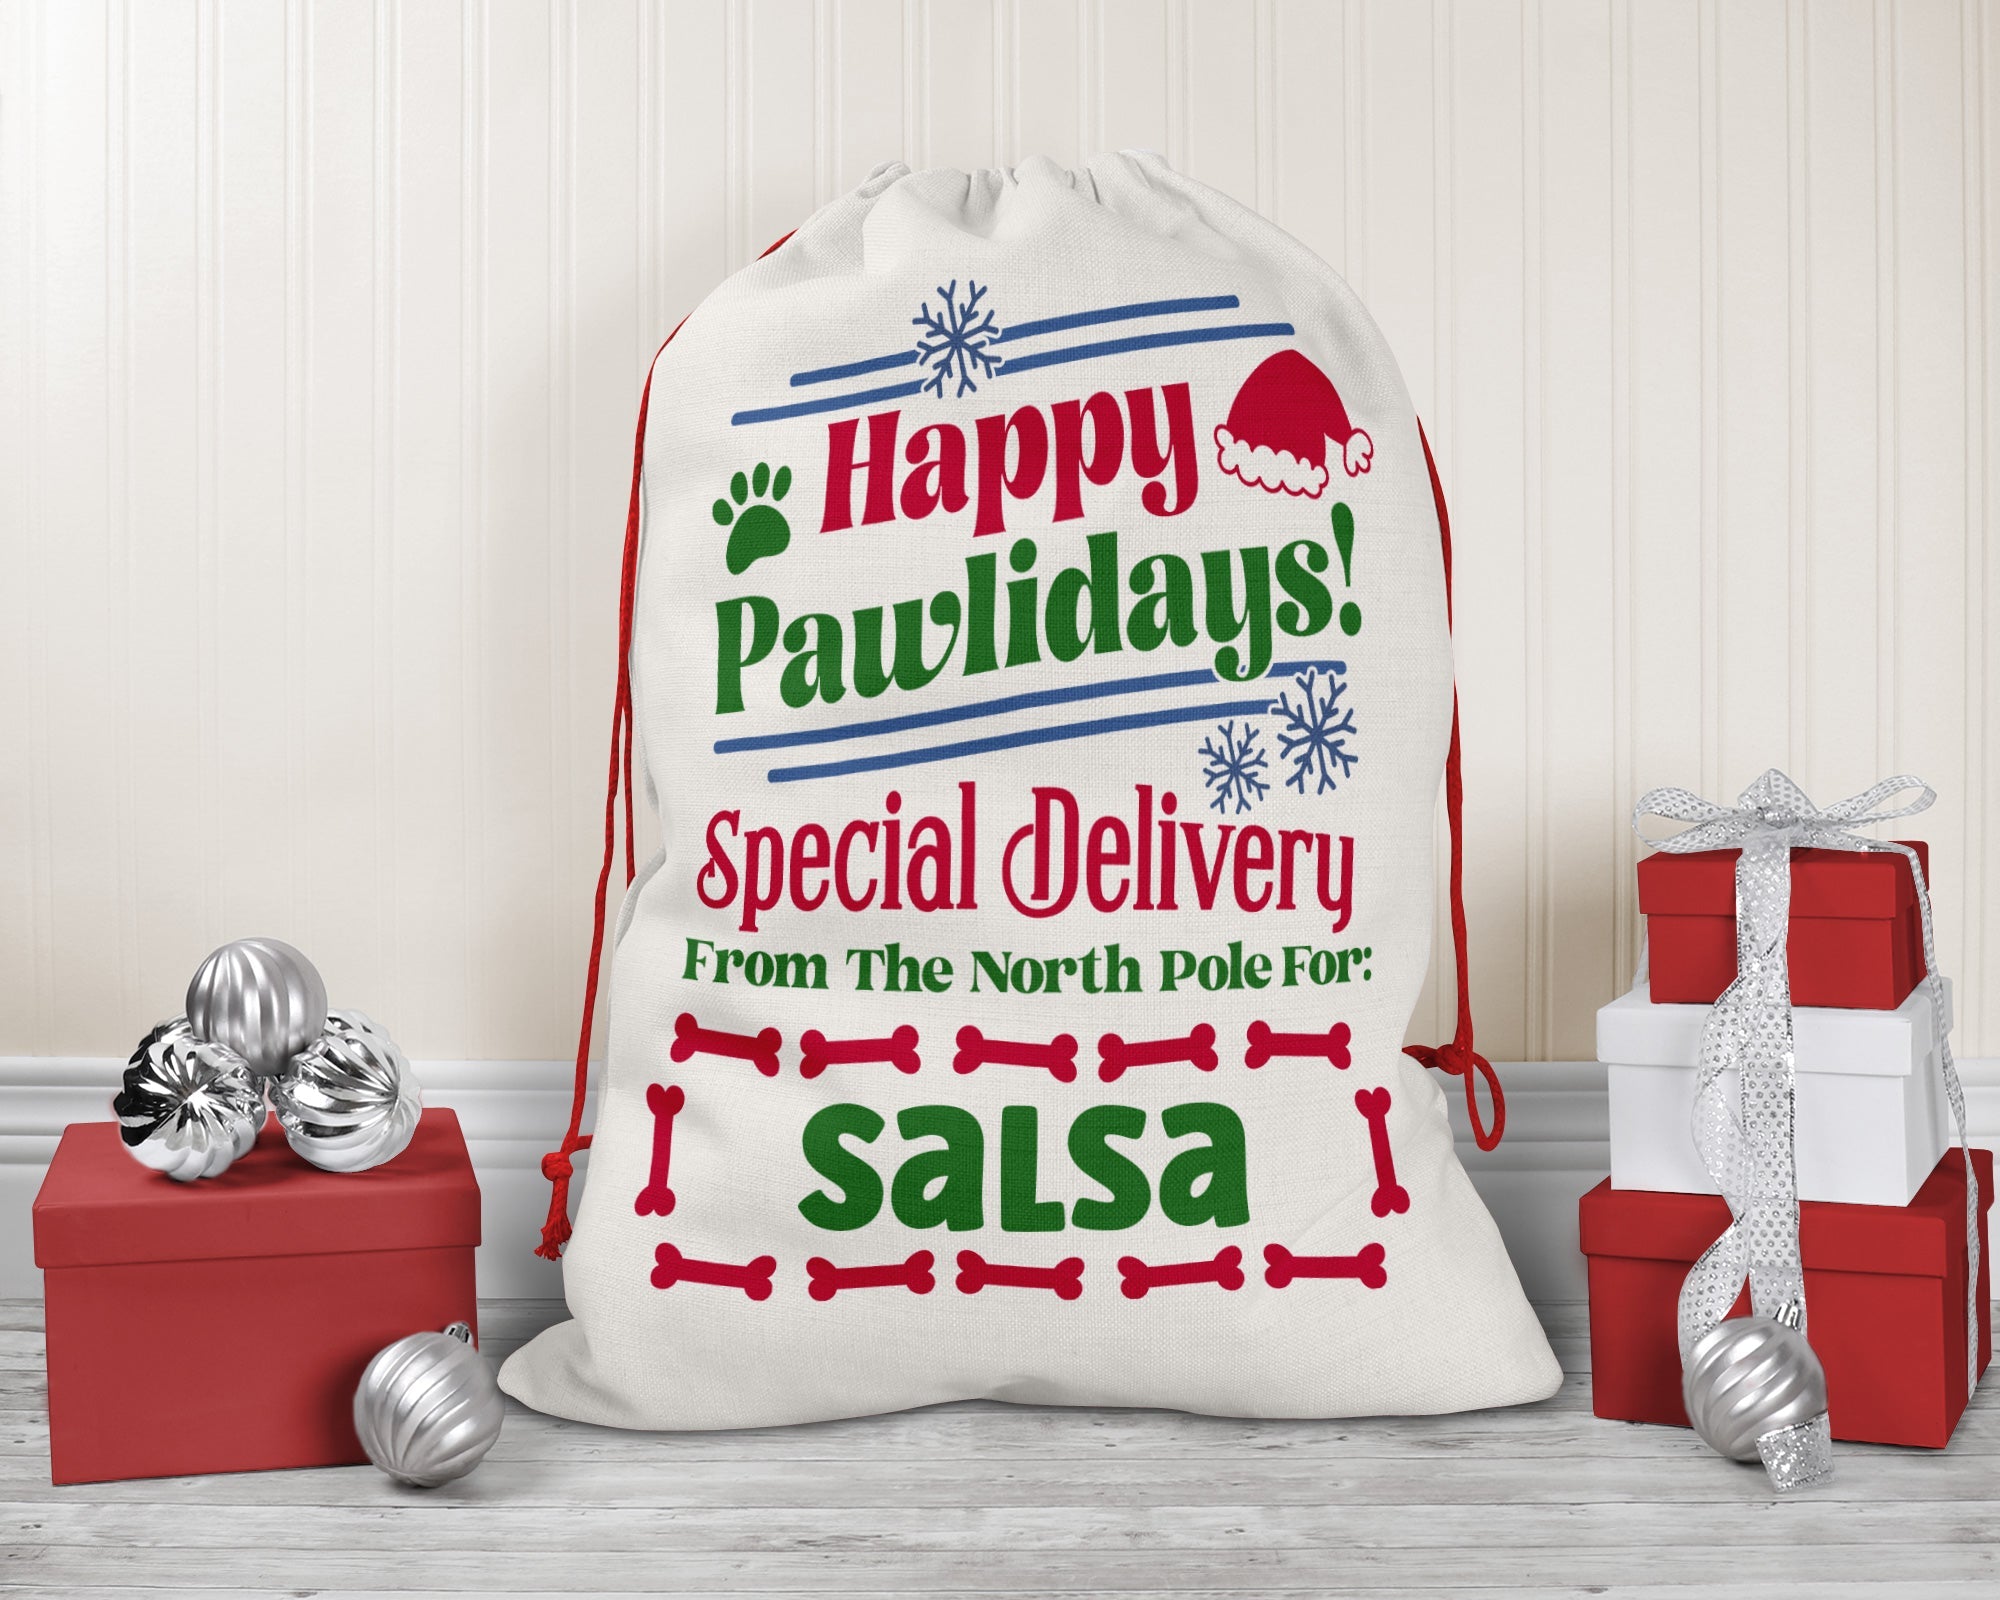 Personalized Santa Sack - Extra Large with Drawstring - Happy Pawlidays!